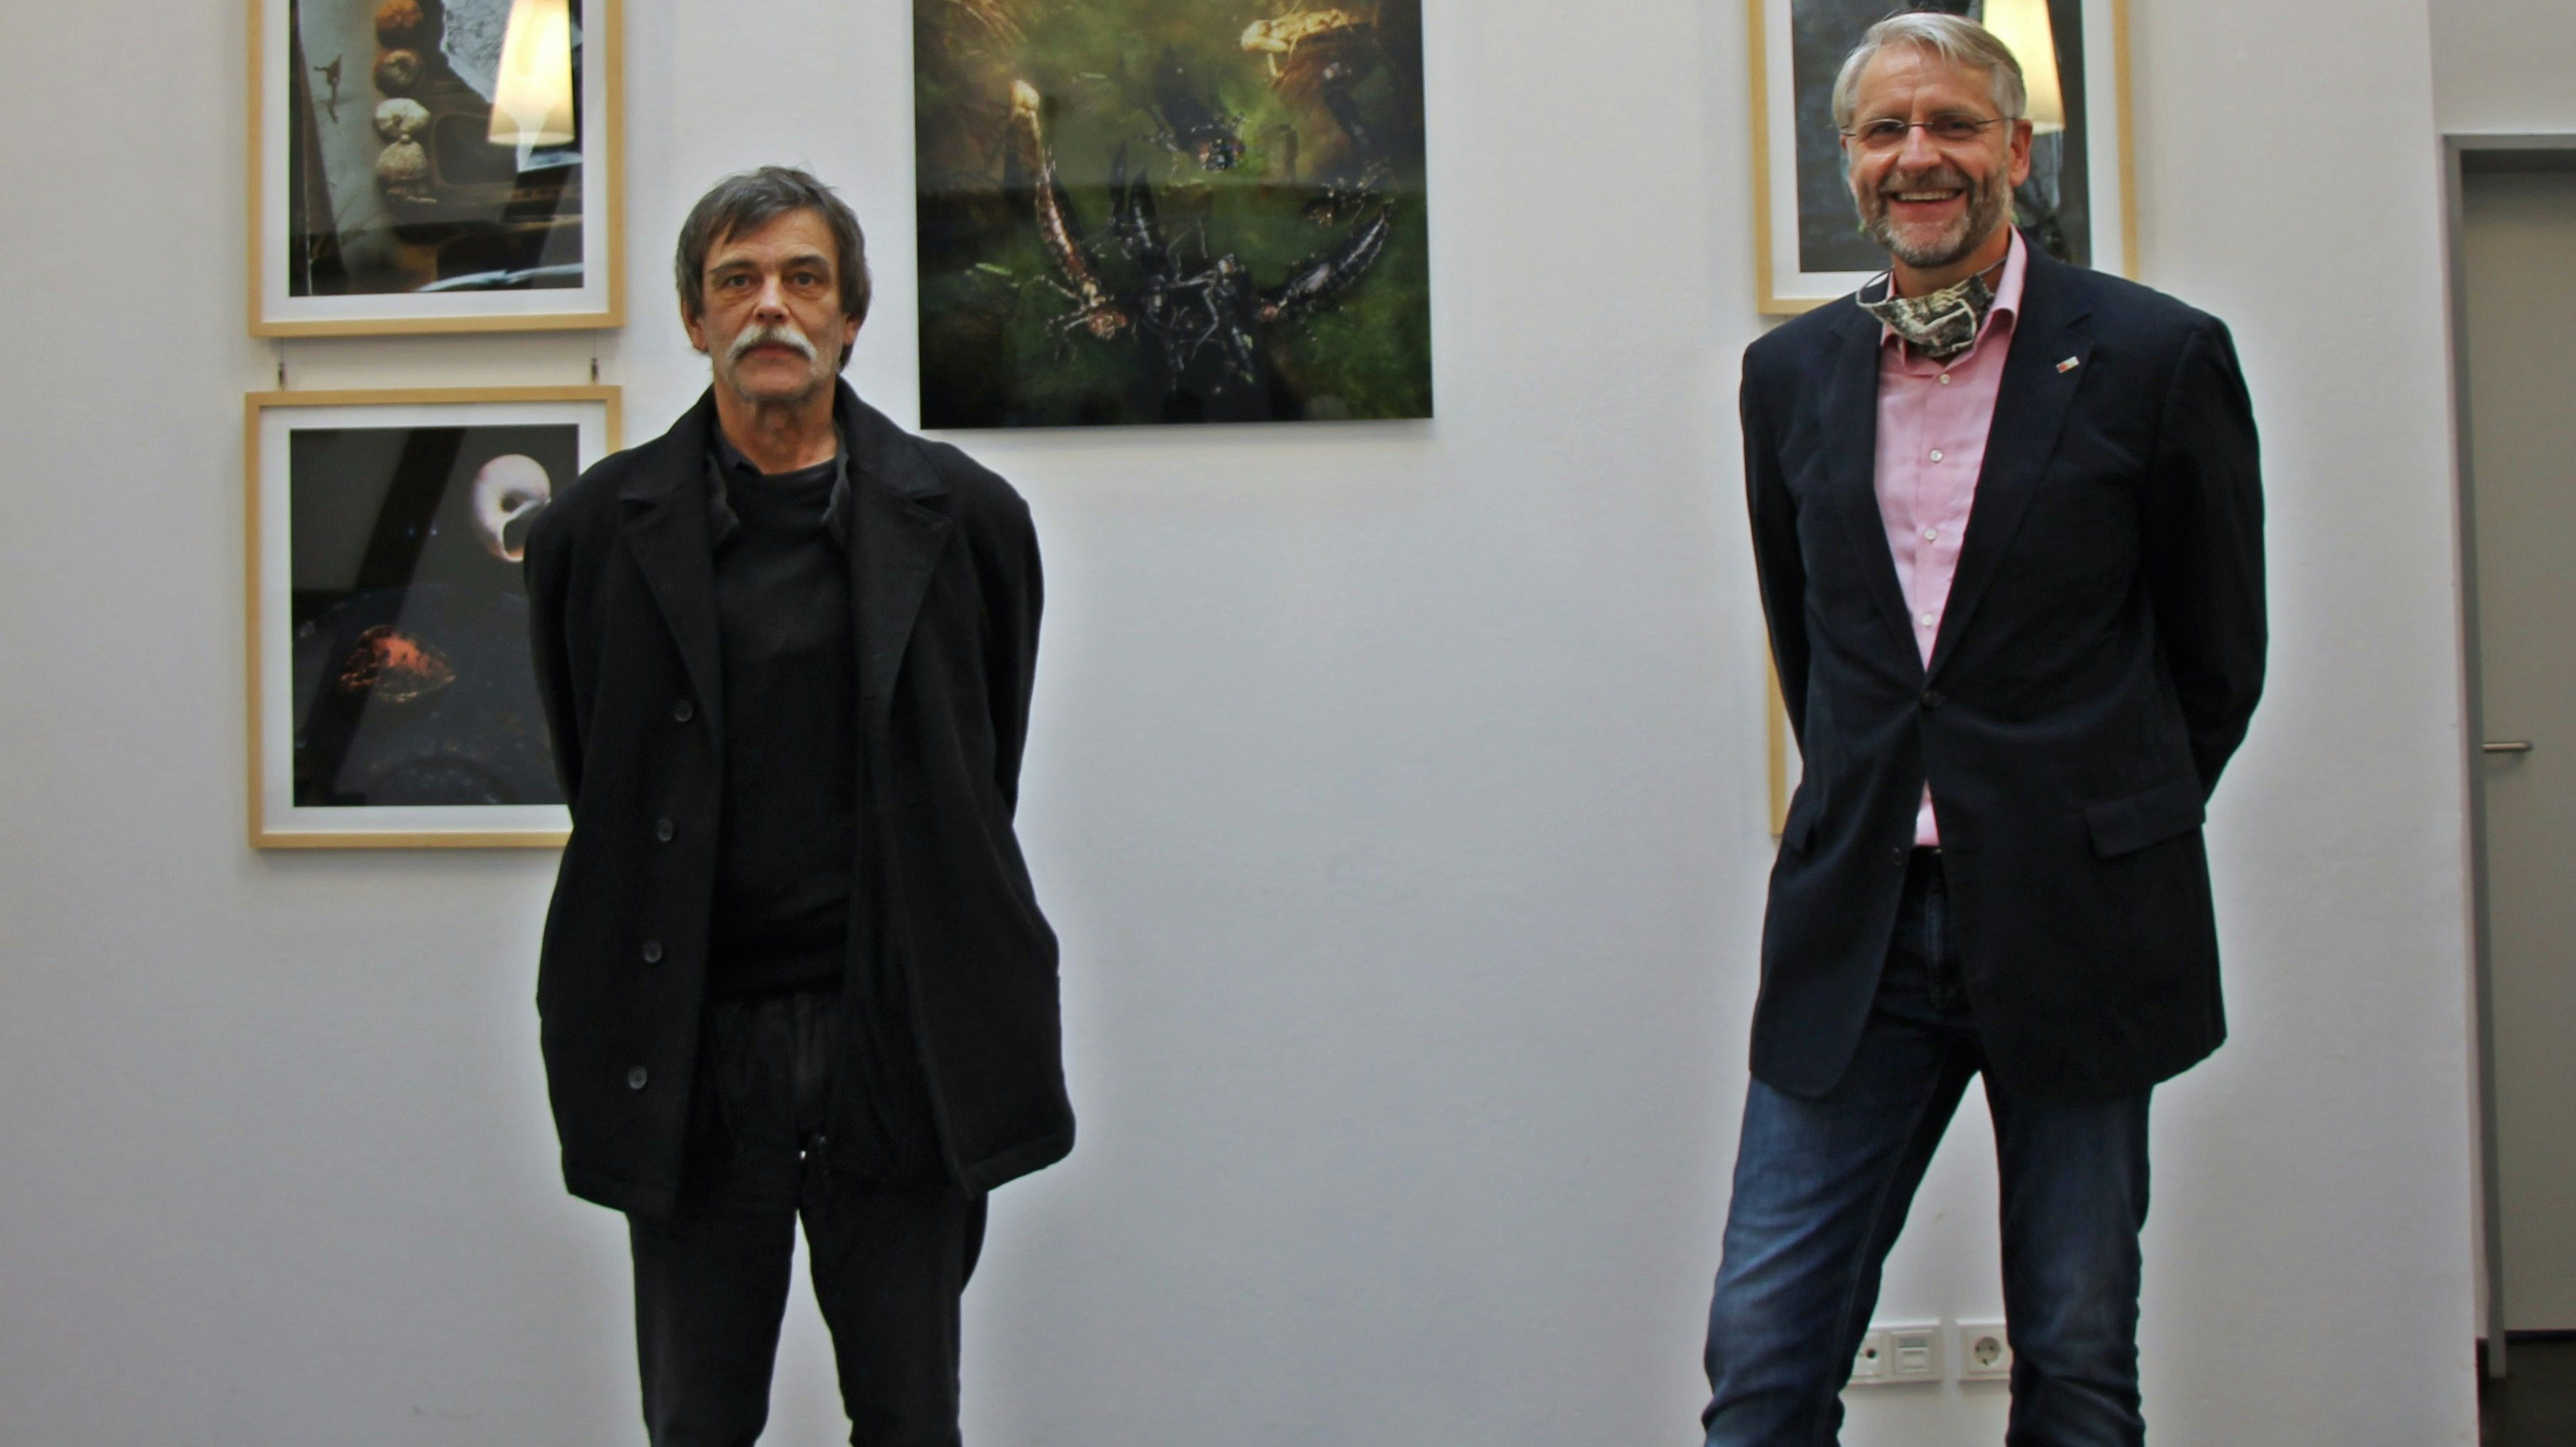 Hoffen auf viele Besucher: Georg Schreiber (links) und Dr. Petersen eröffneten die Ausstellung. Foto: Oevermann